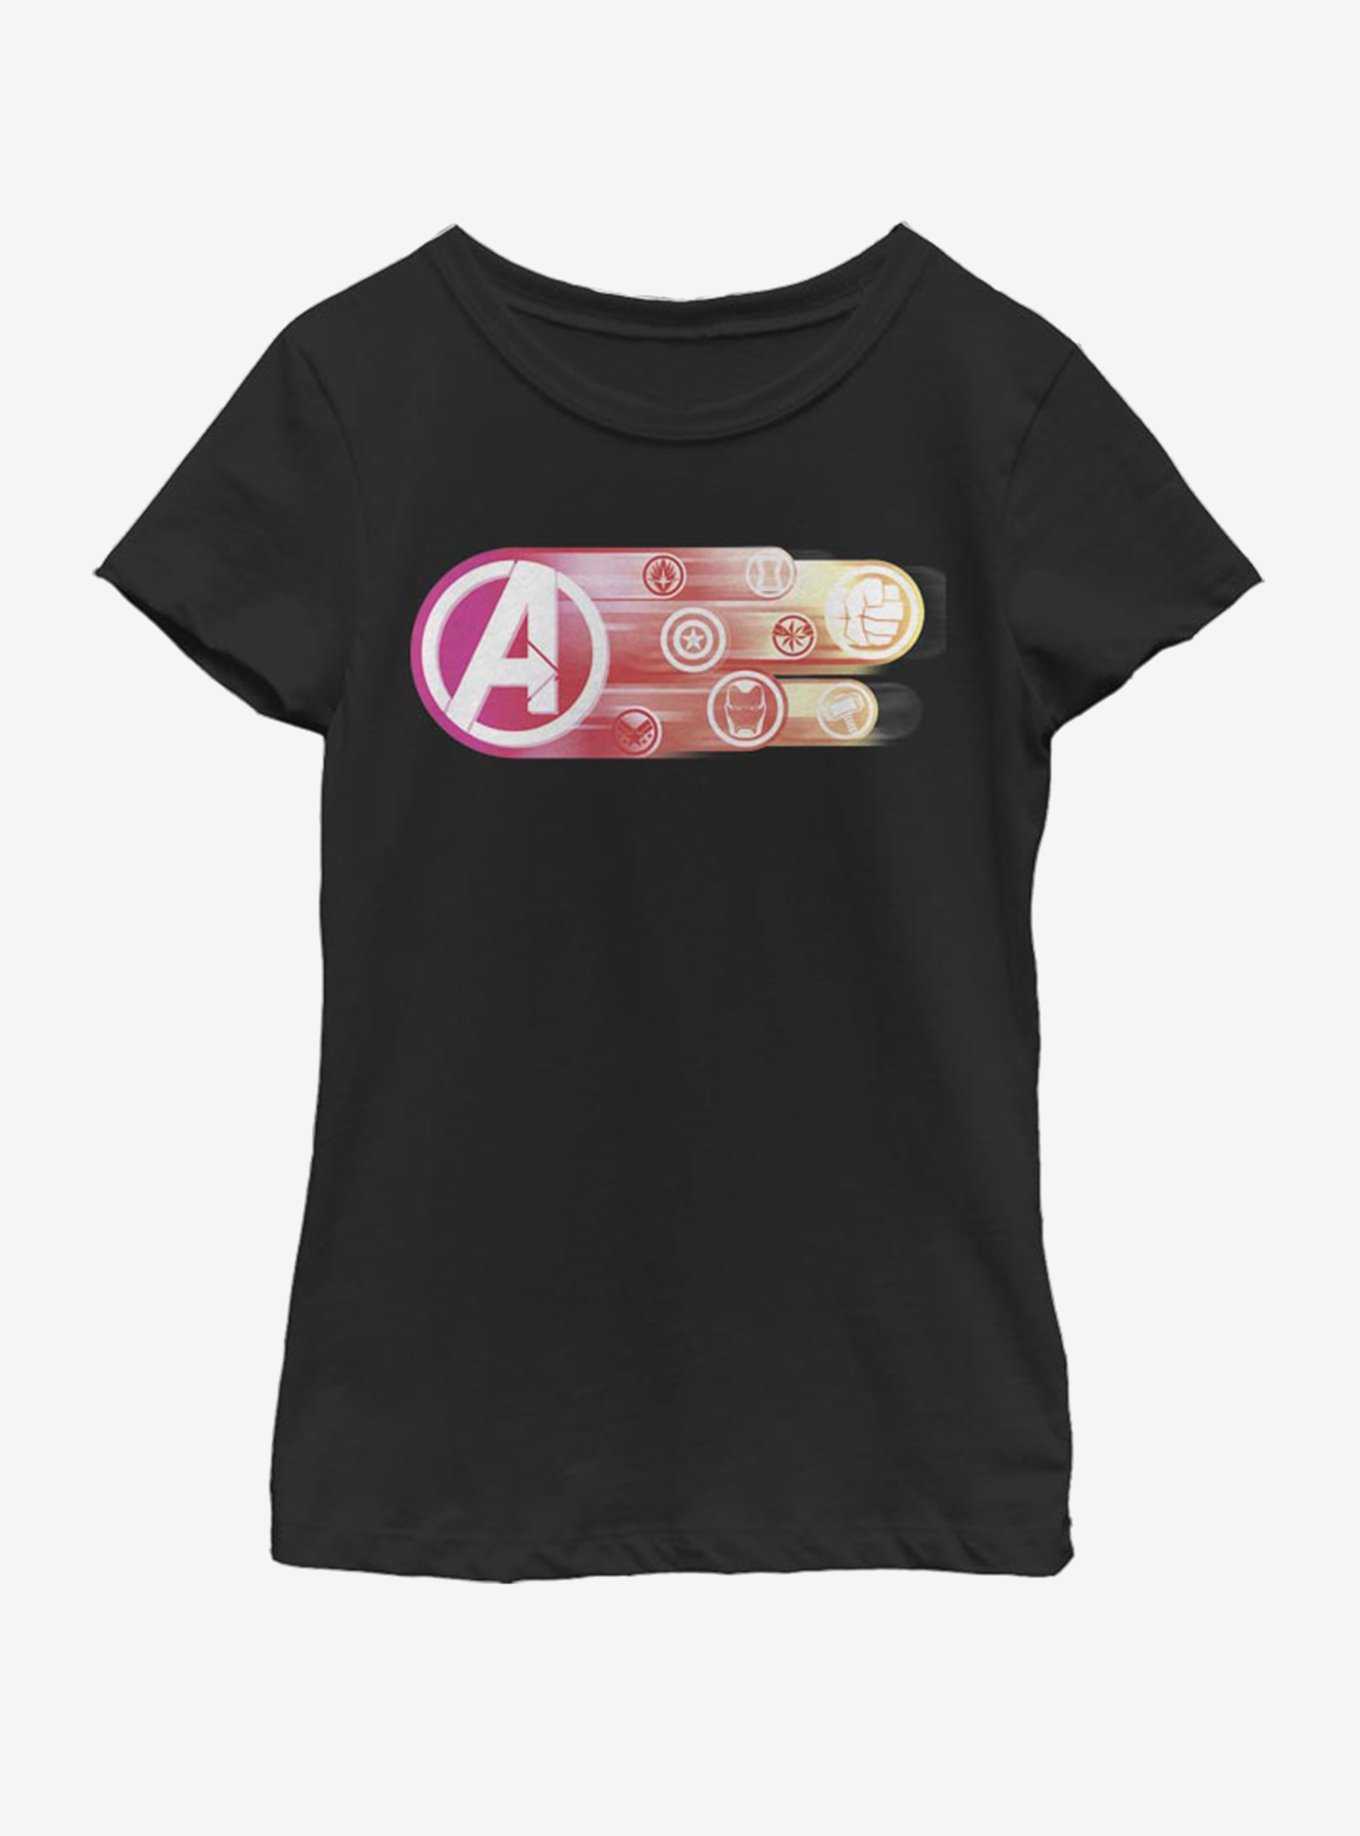 Marvel Avengers: Endgame Endgame Icons group Youth Girls T-Shirt, , hi-res